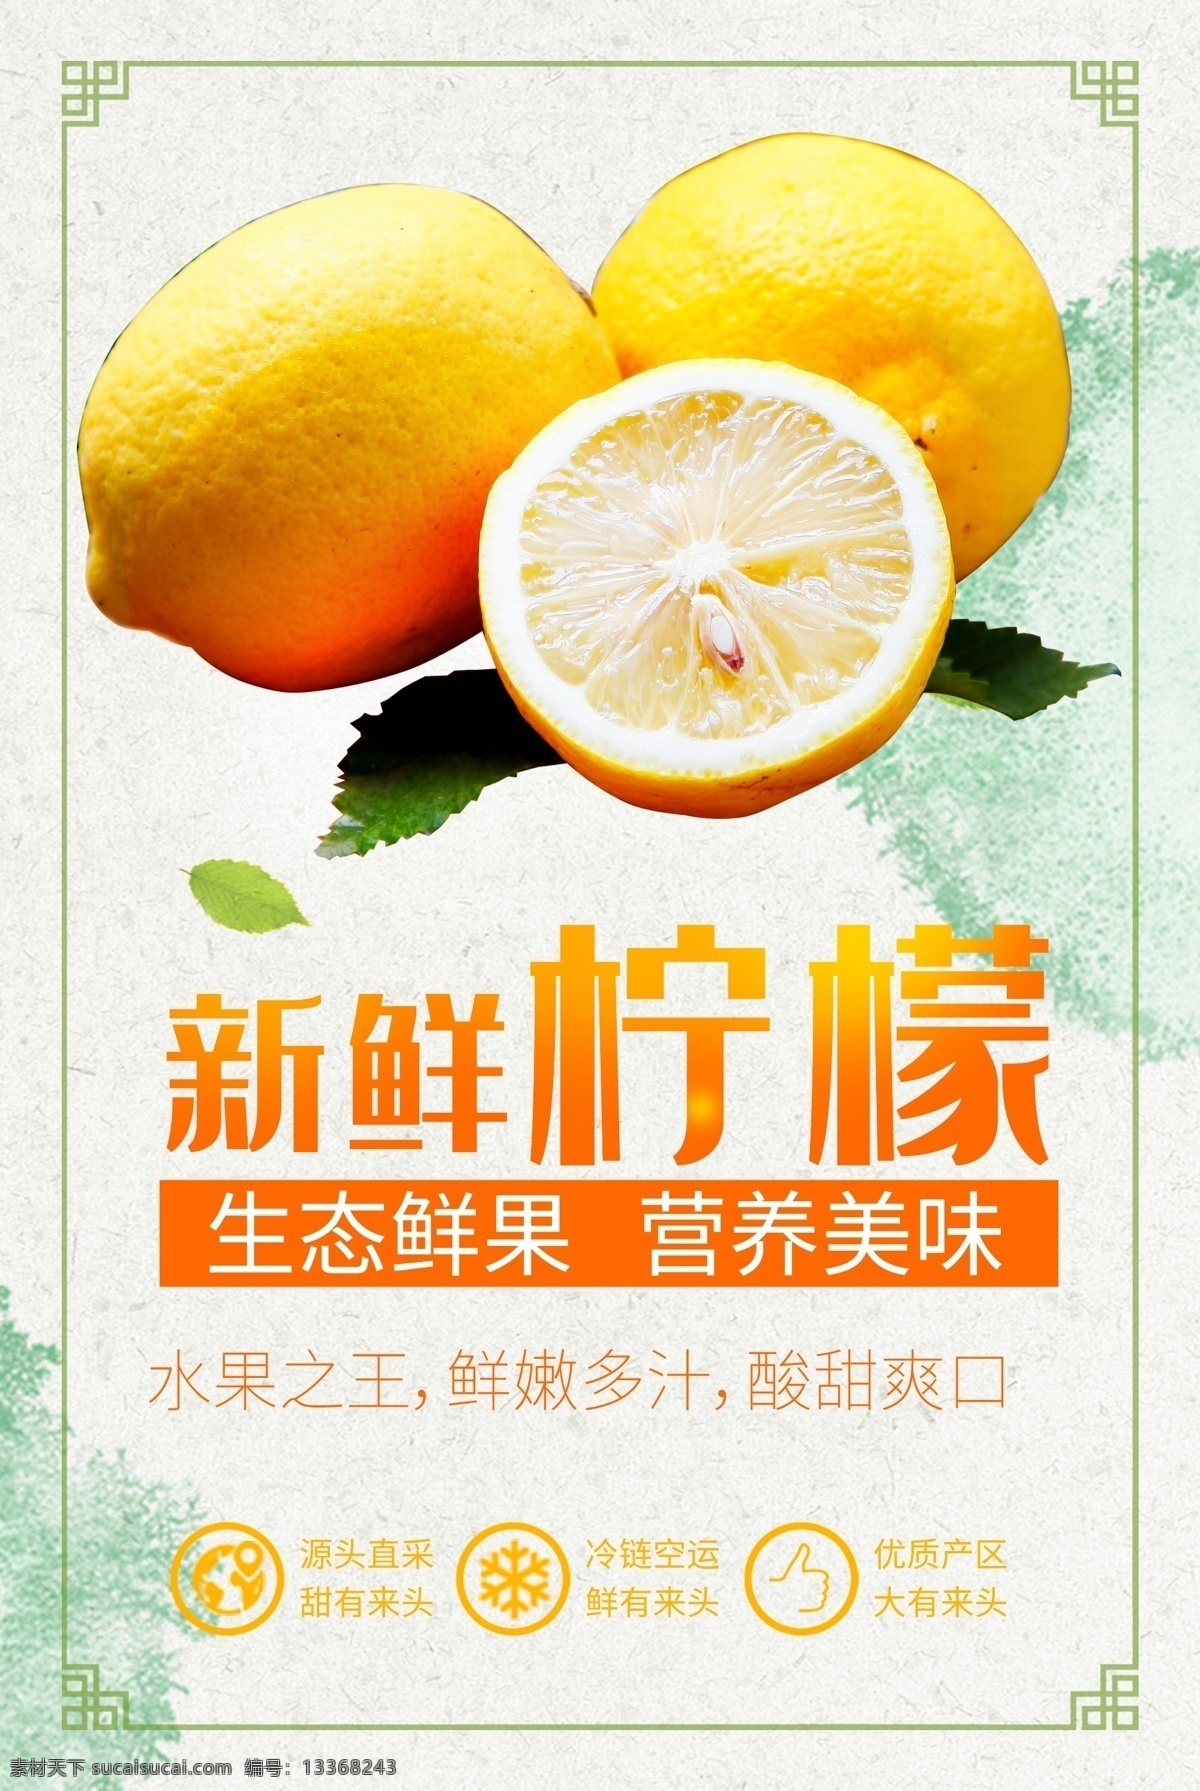 新鲜 柠檬 水果 促销 海报 促销海报 简约海报 食品海报 水果海报 小清新海报